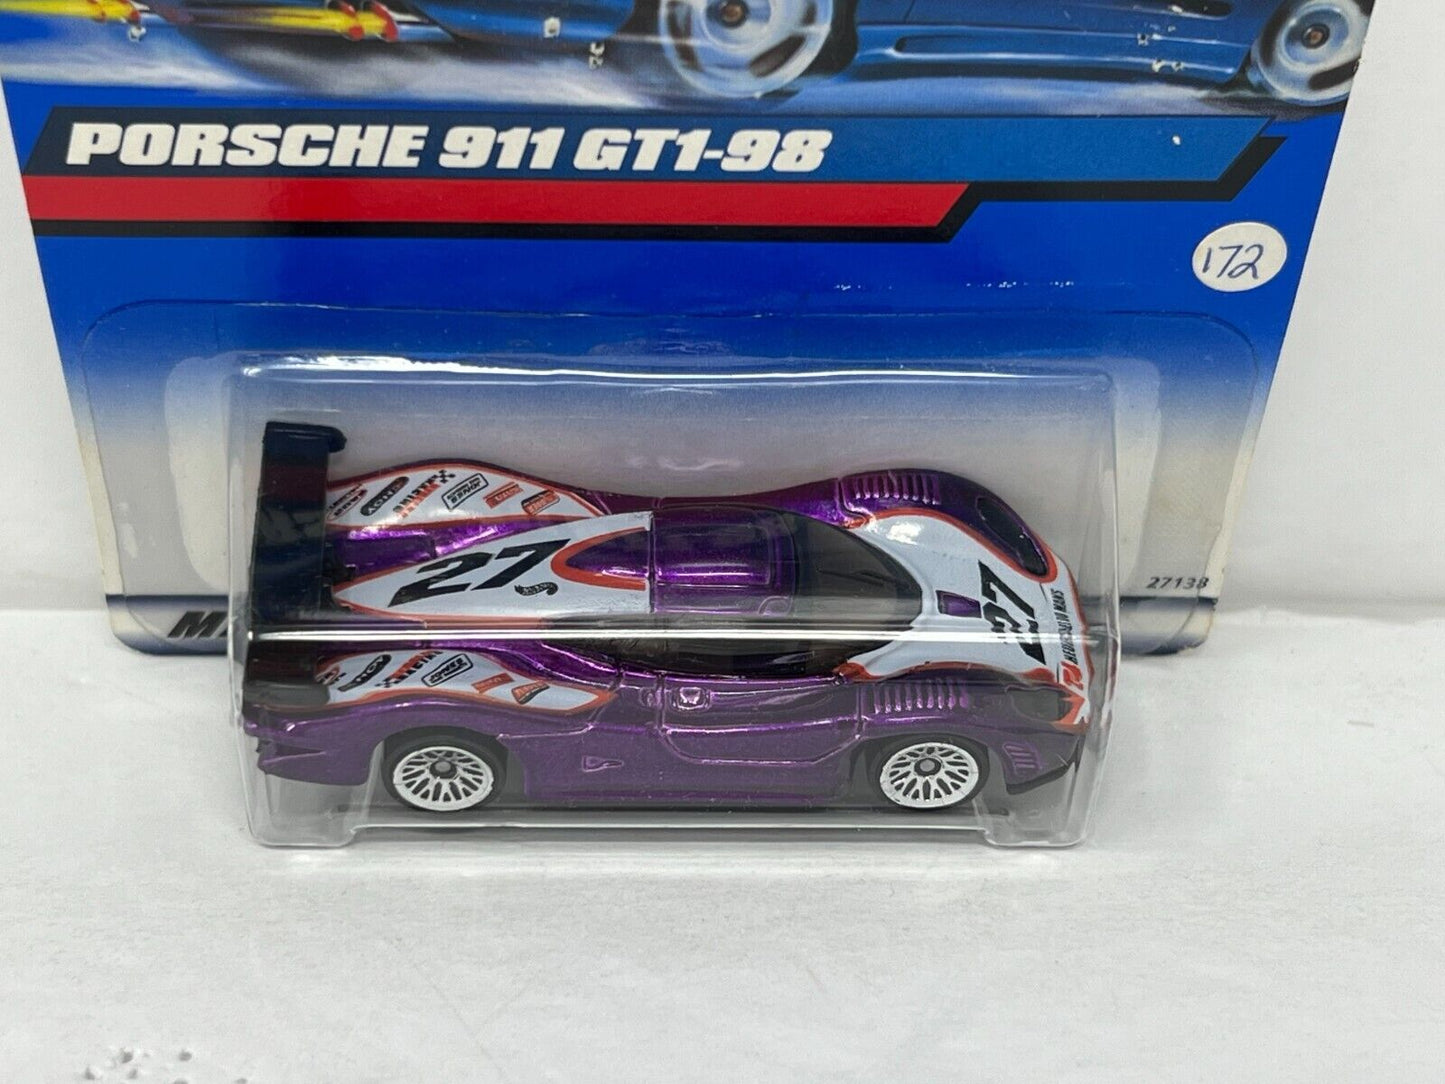 Hot Wheels Porsche 911 GT1-98 Purple 1:64 Diecast